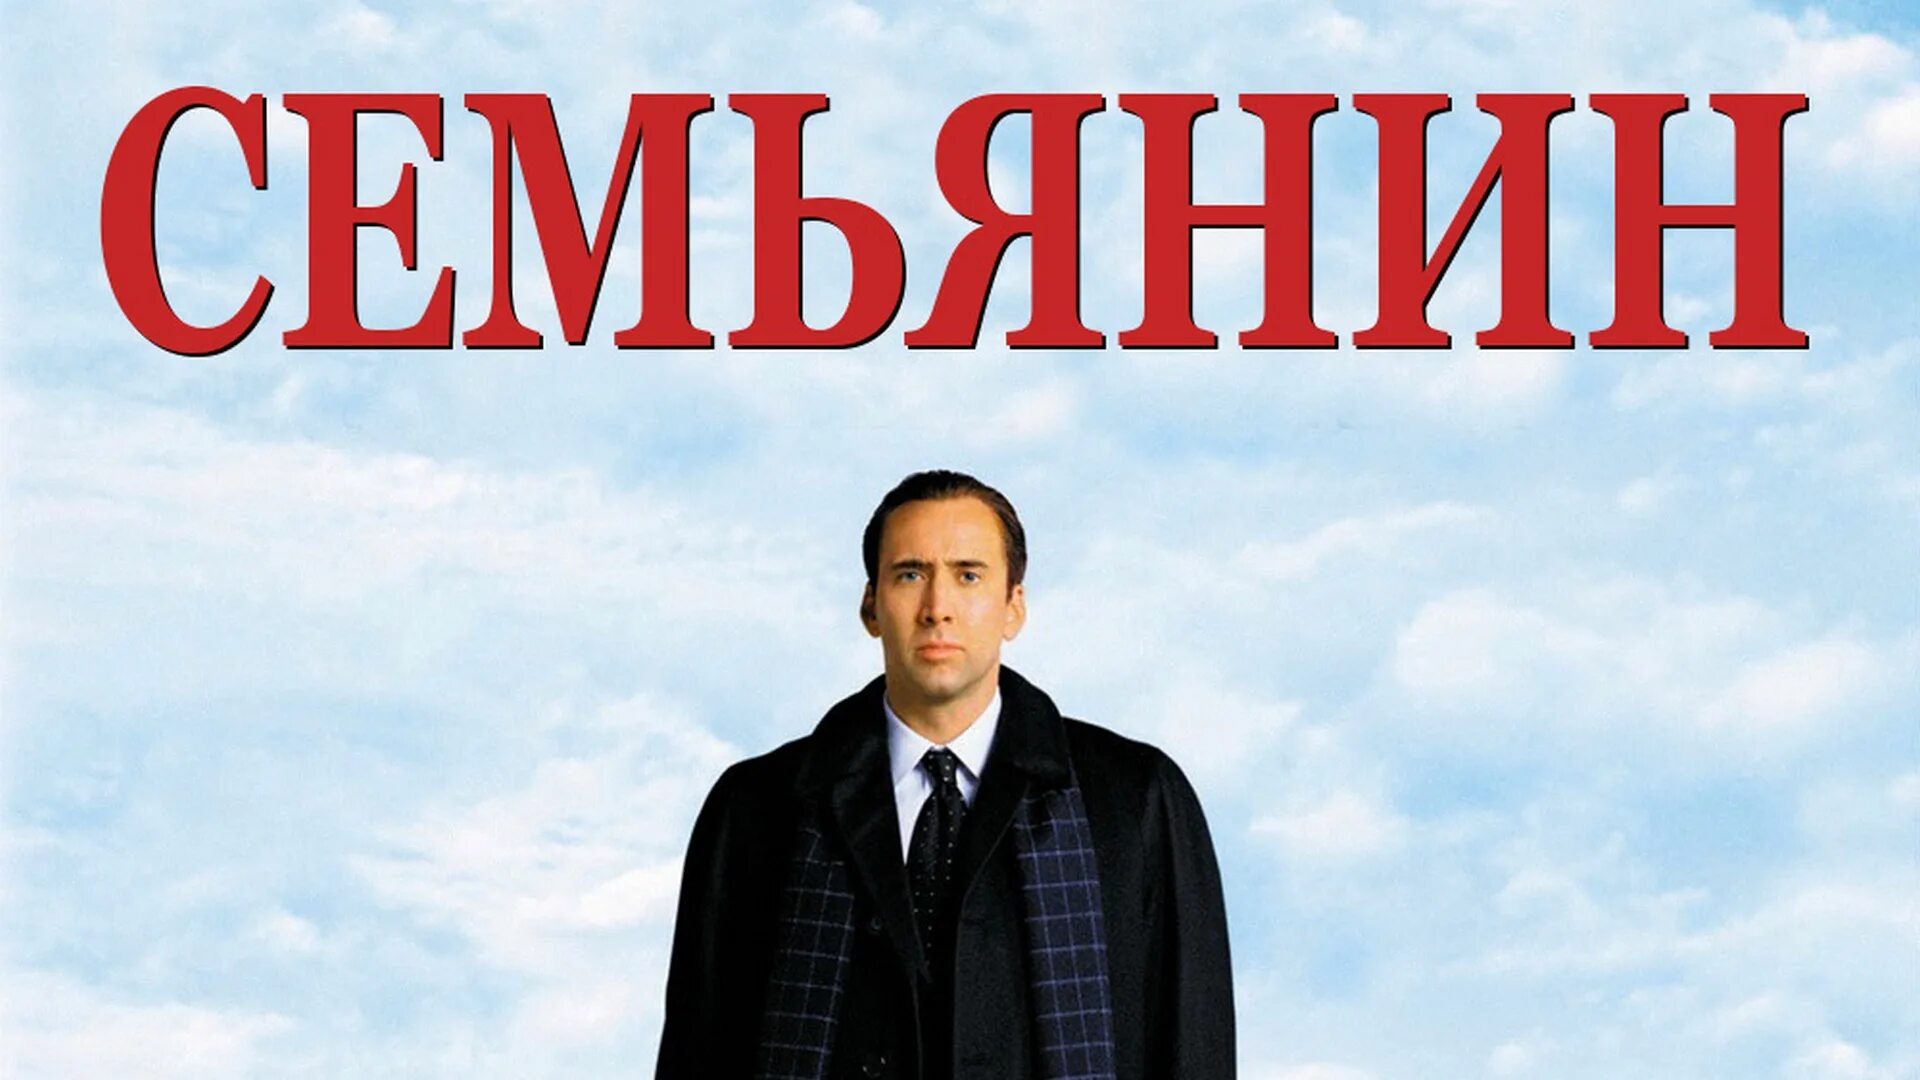 Семьянин the Family man, 2000. Семьянин Постер. Семьянин афиша. Русский семьянин